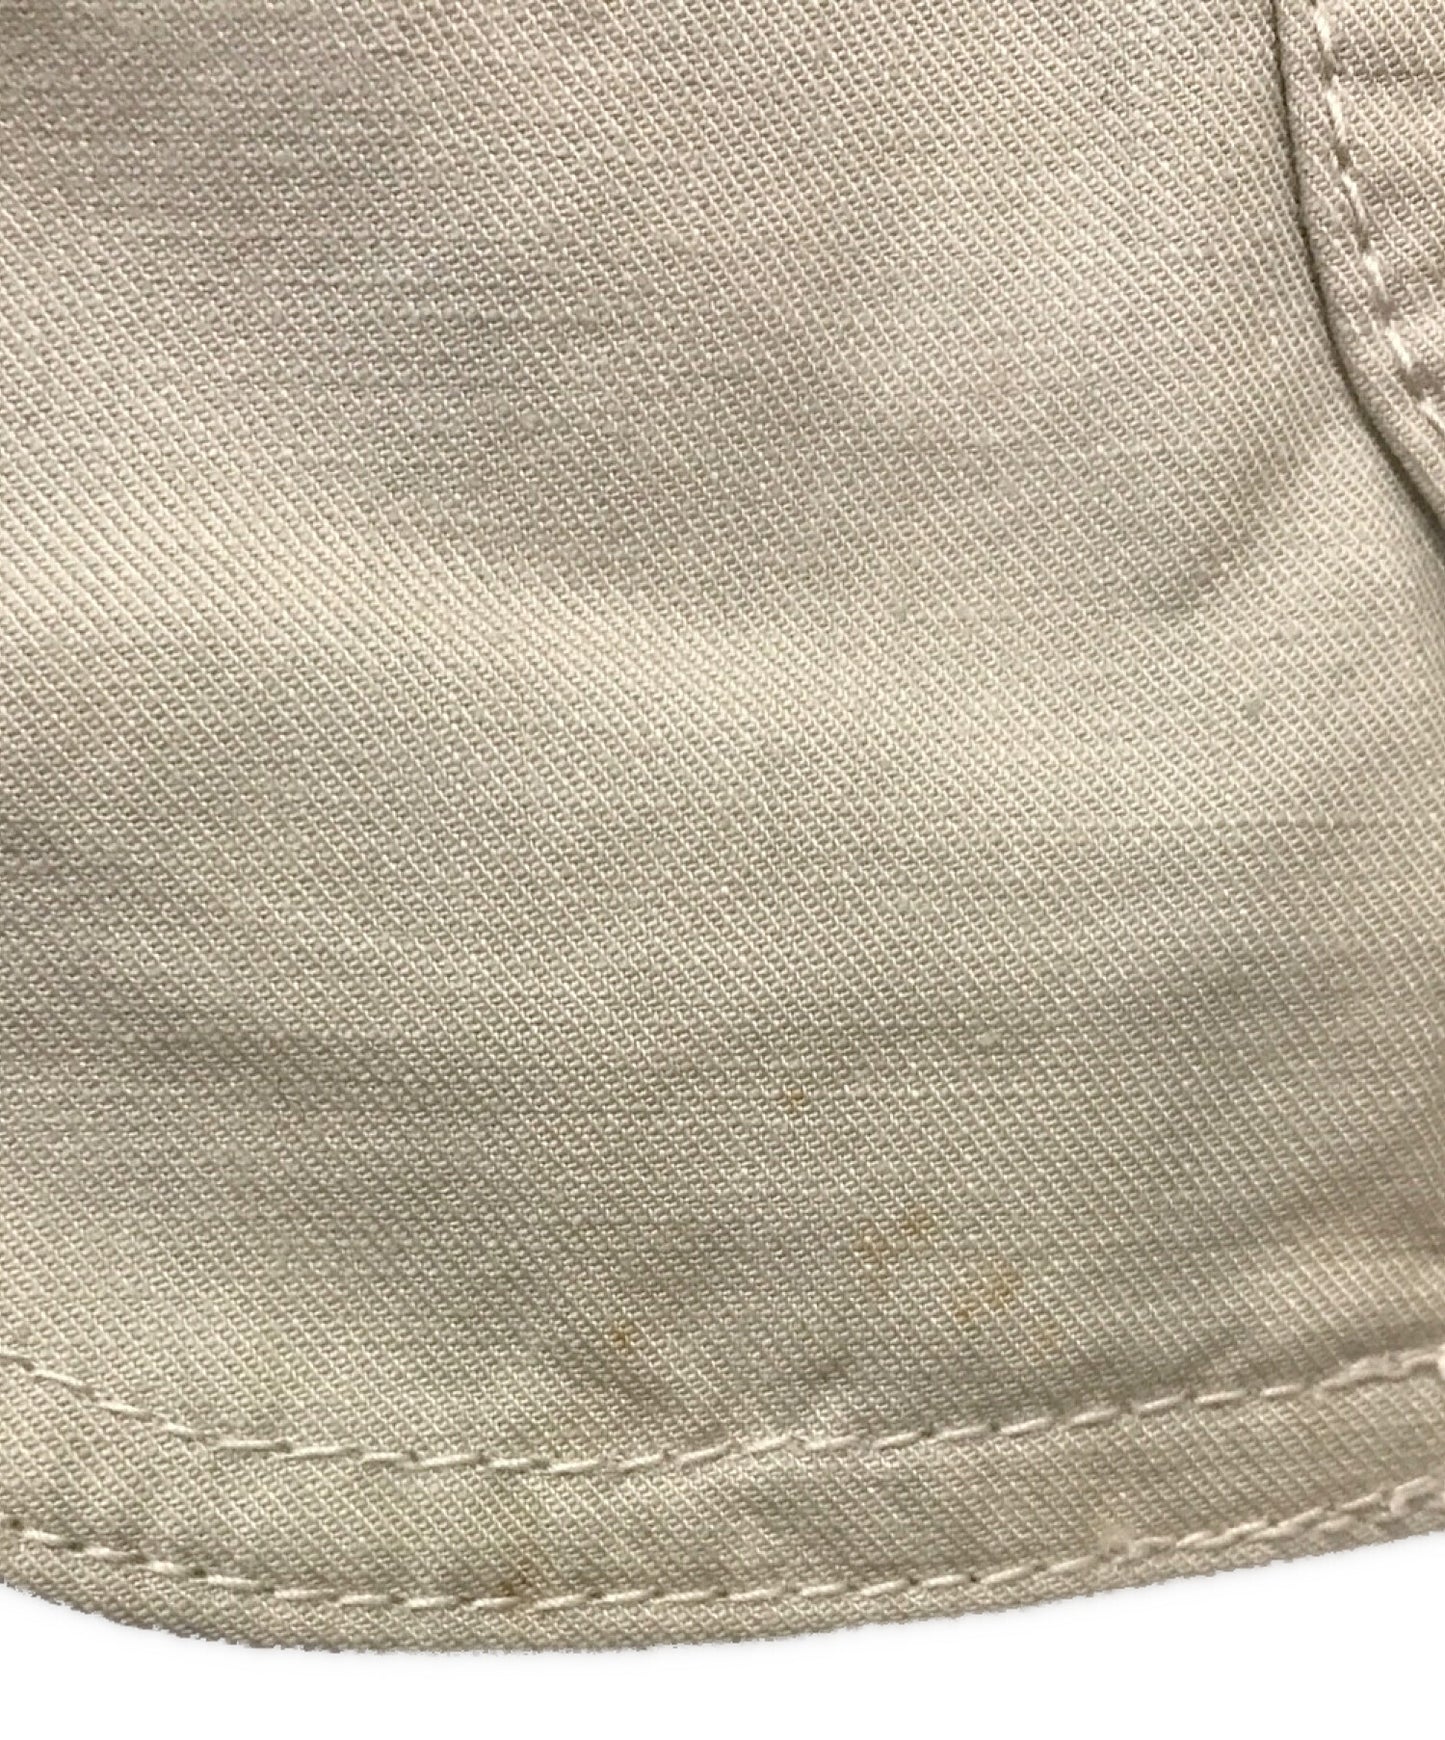 [Pre-owned] COMME des GARCONS HOMME Vintage 3B Cotton Jacket HM-J005